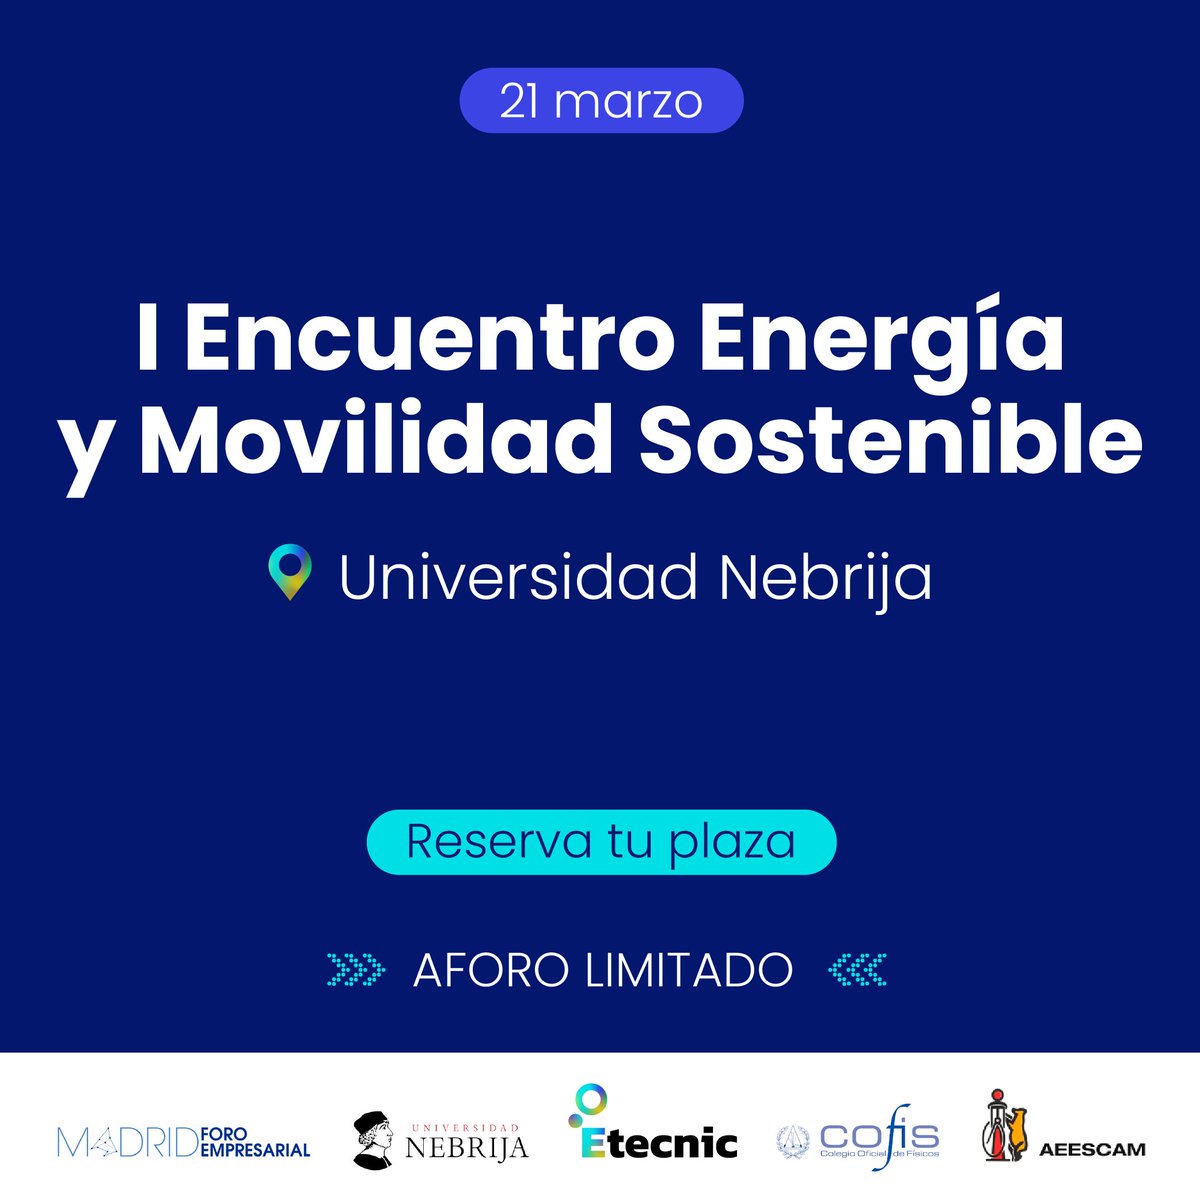 Te invitamos al I Encuentro Energía y Movilidad Sostenible! 📅 21/03 en @Nebrija. Gratis con inscripción. actos.nebrija.es/113382 #MovilidadEléctrica #EtecnicEVents #Etecnic @madridforo @red_cofis